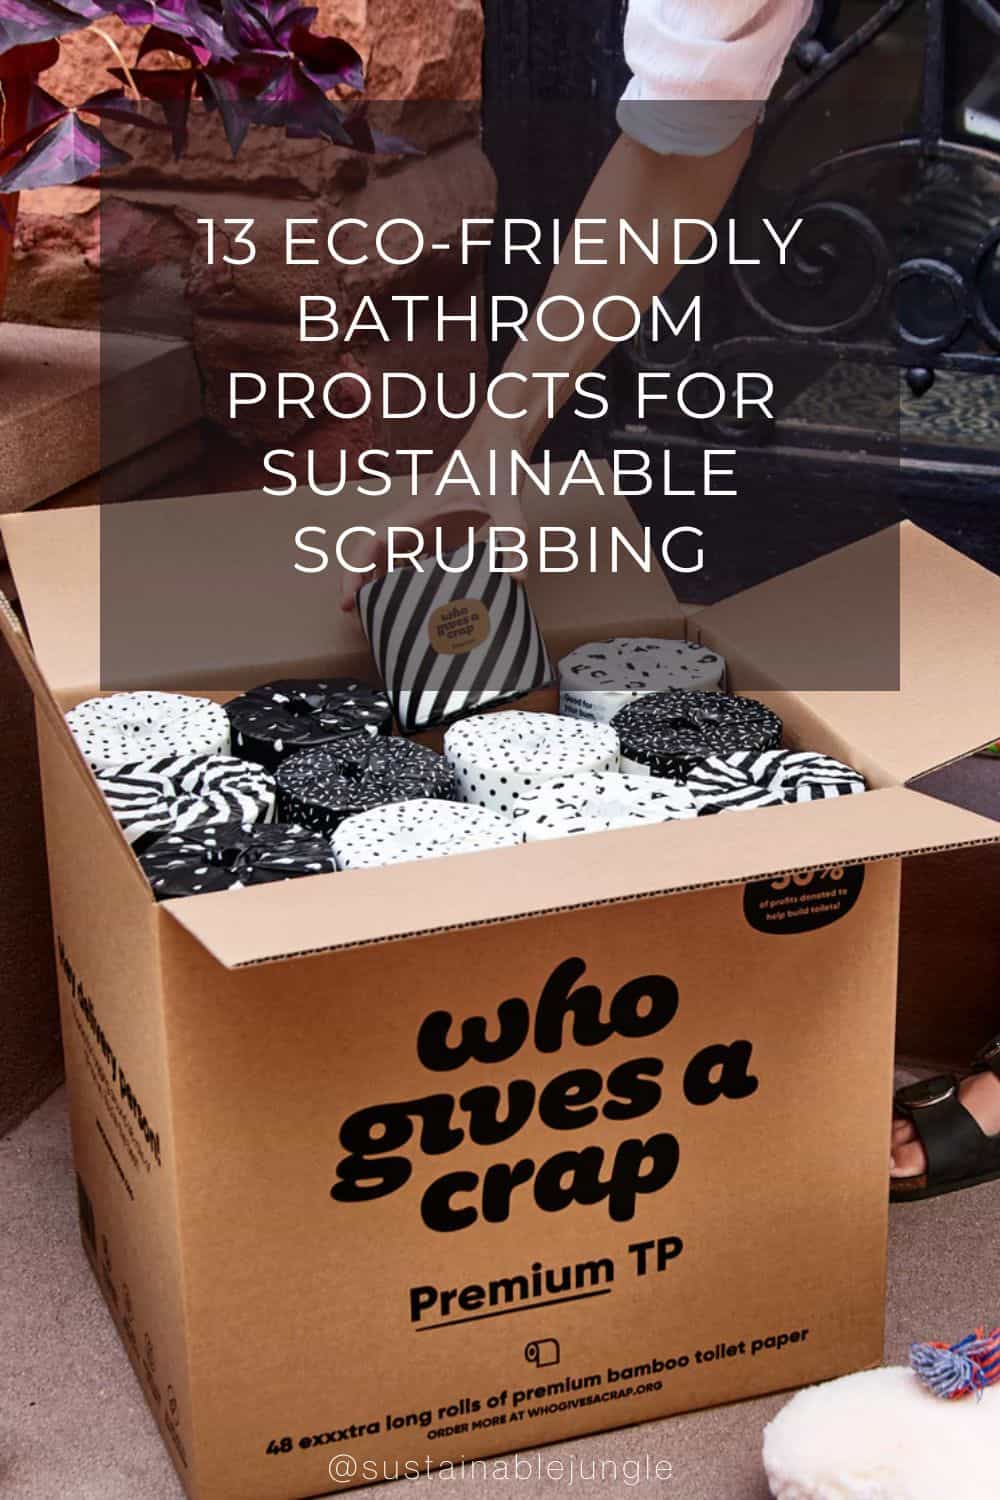 图片来自Who Gives A Crap #生态友好浴室产品#生态友好淋浴产品#生态友好浴室产品#可持续浴室产品#可持续浴室产品#可持续丛林